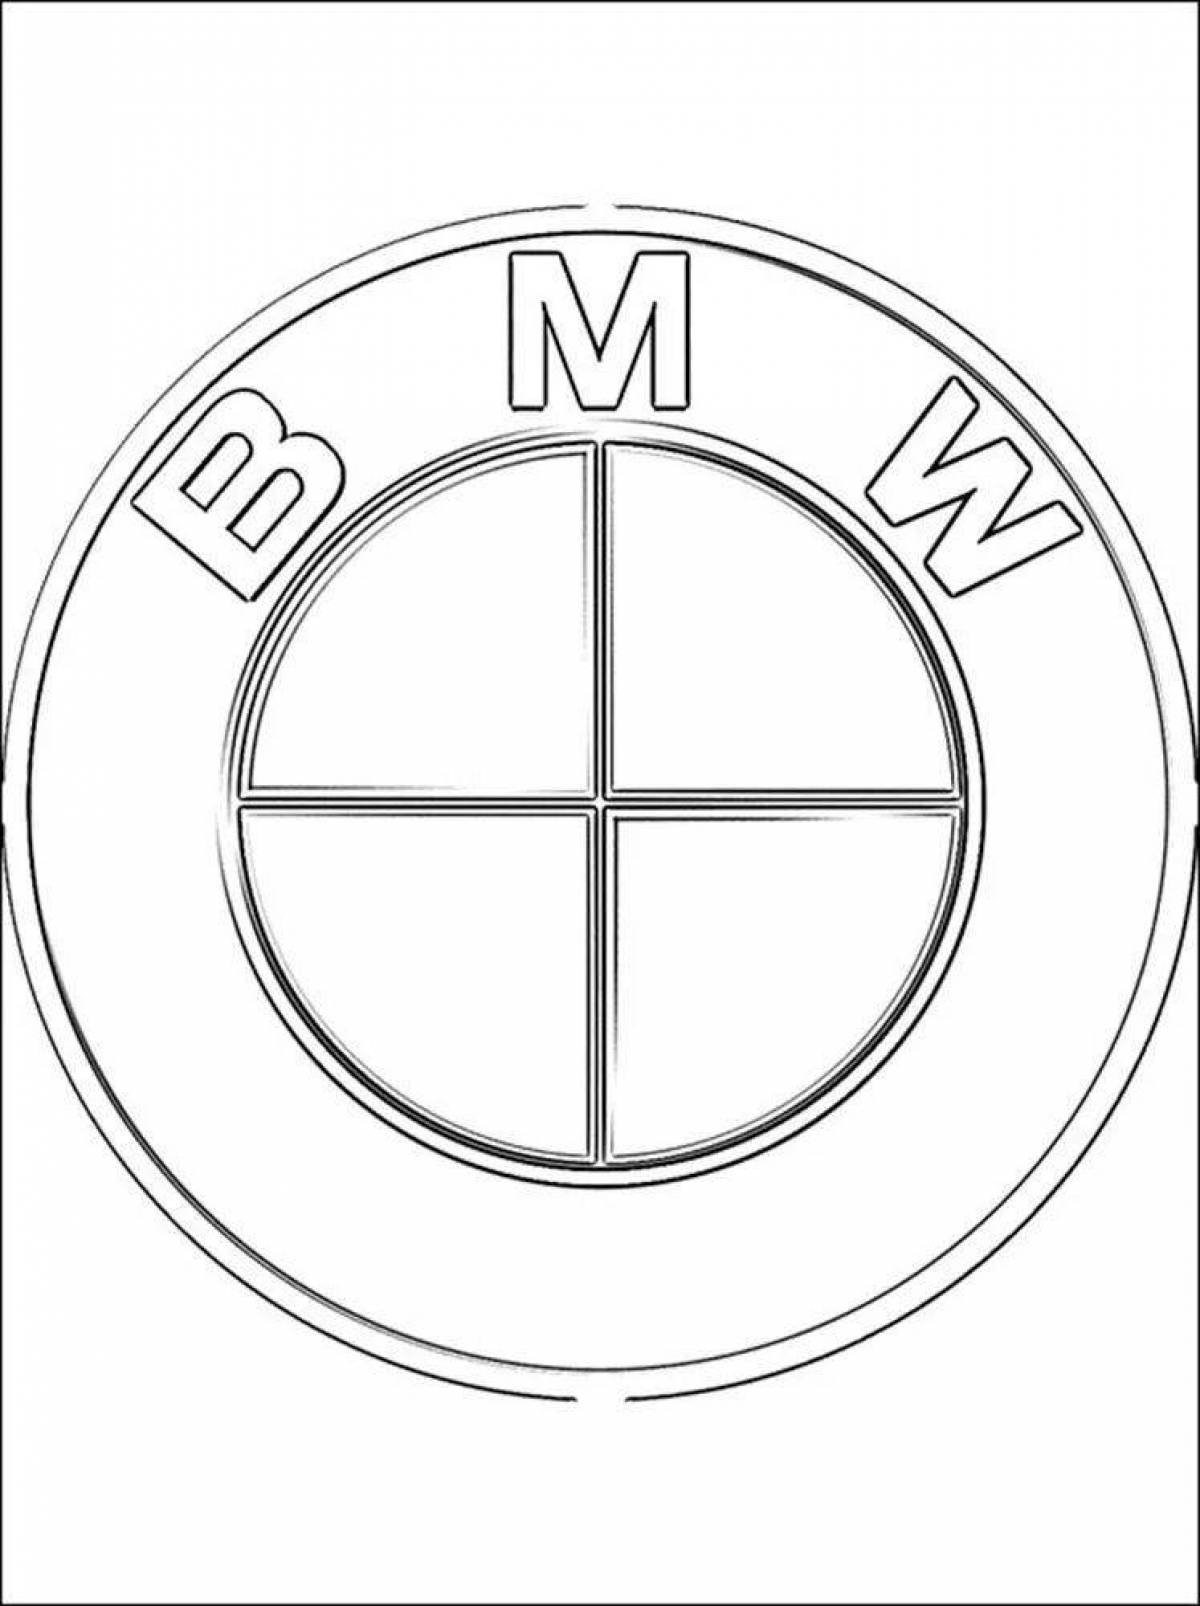 Раскраска инновационный знак bmw